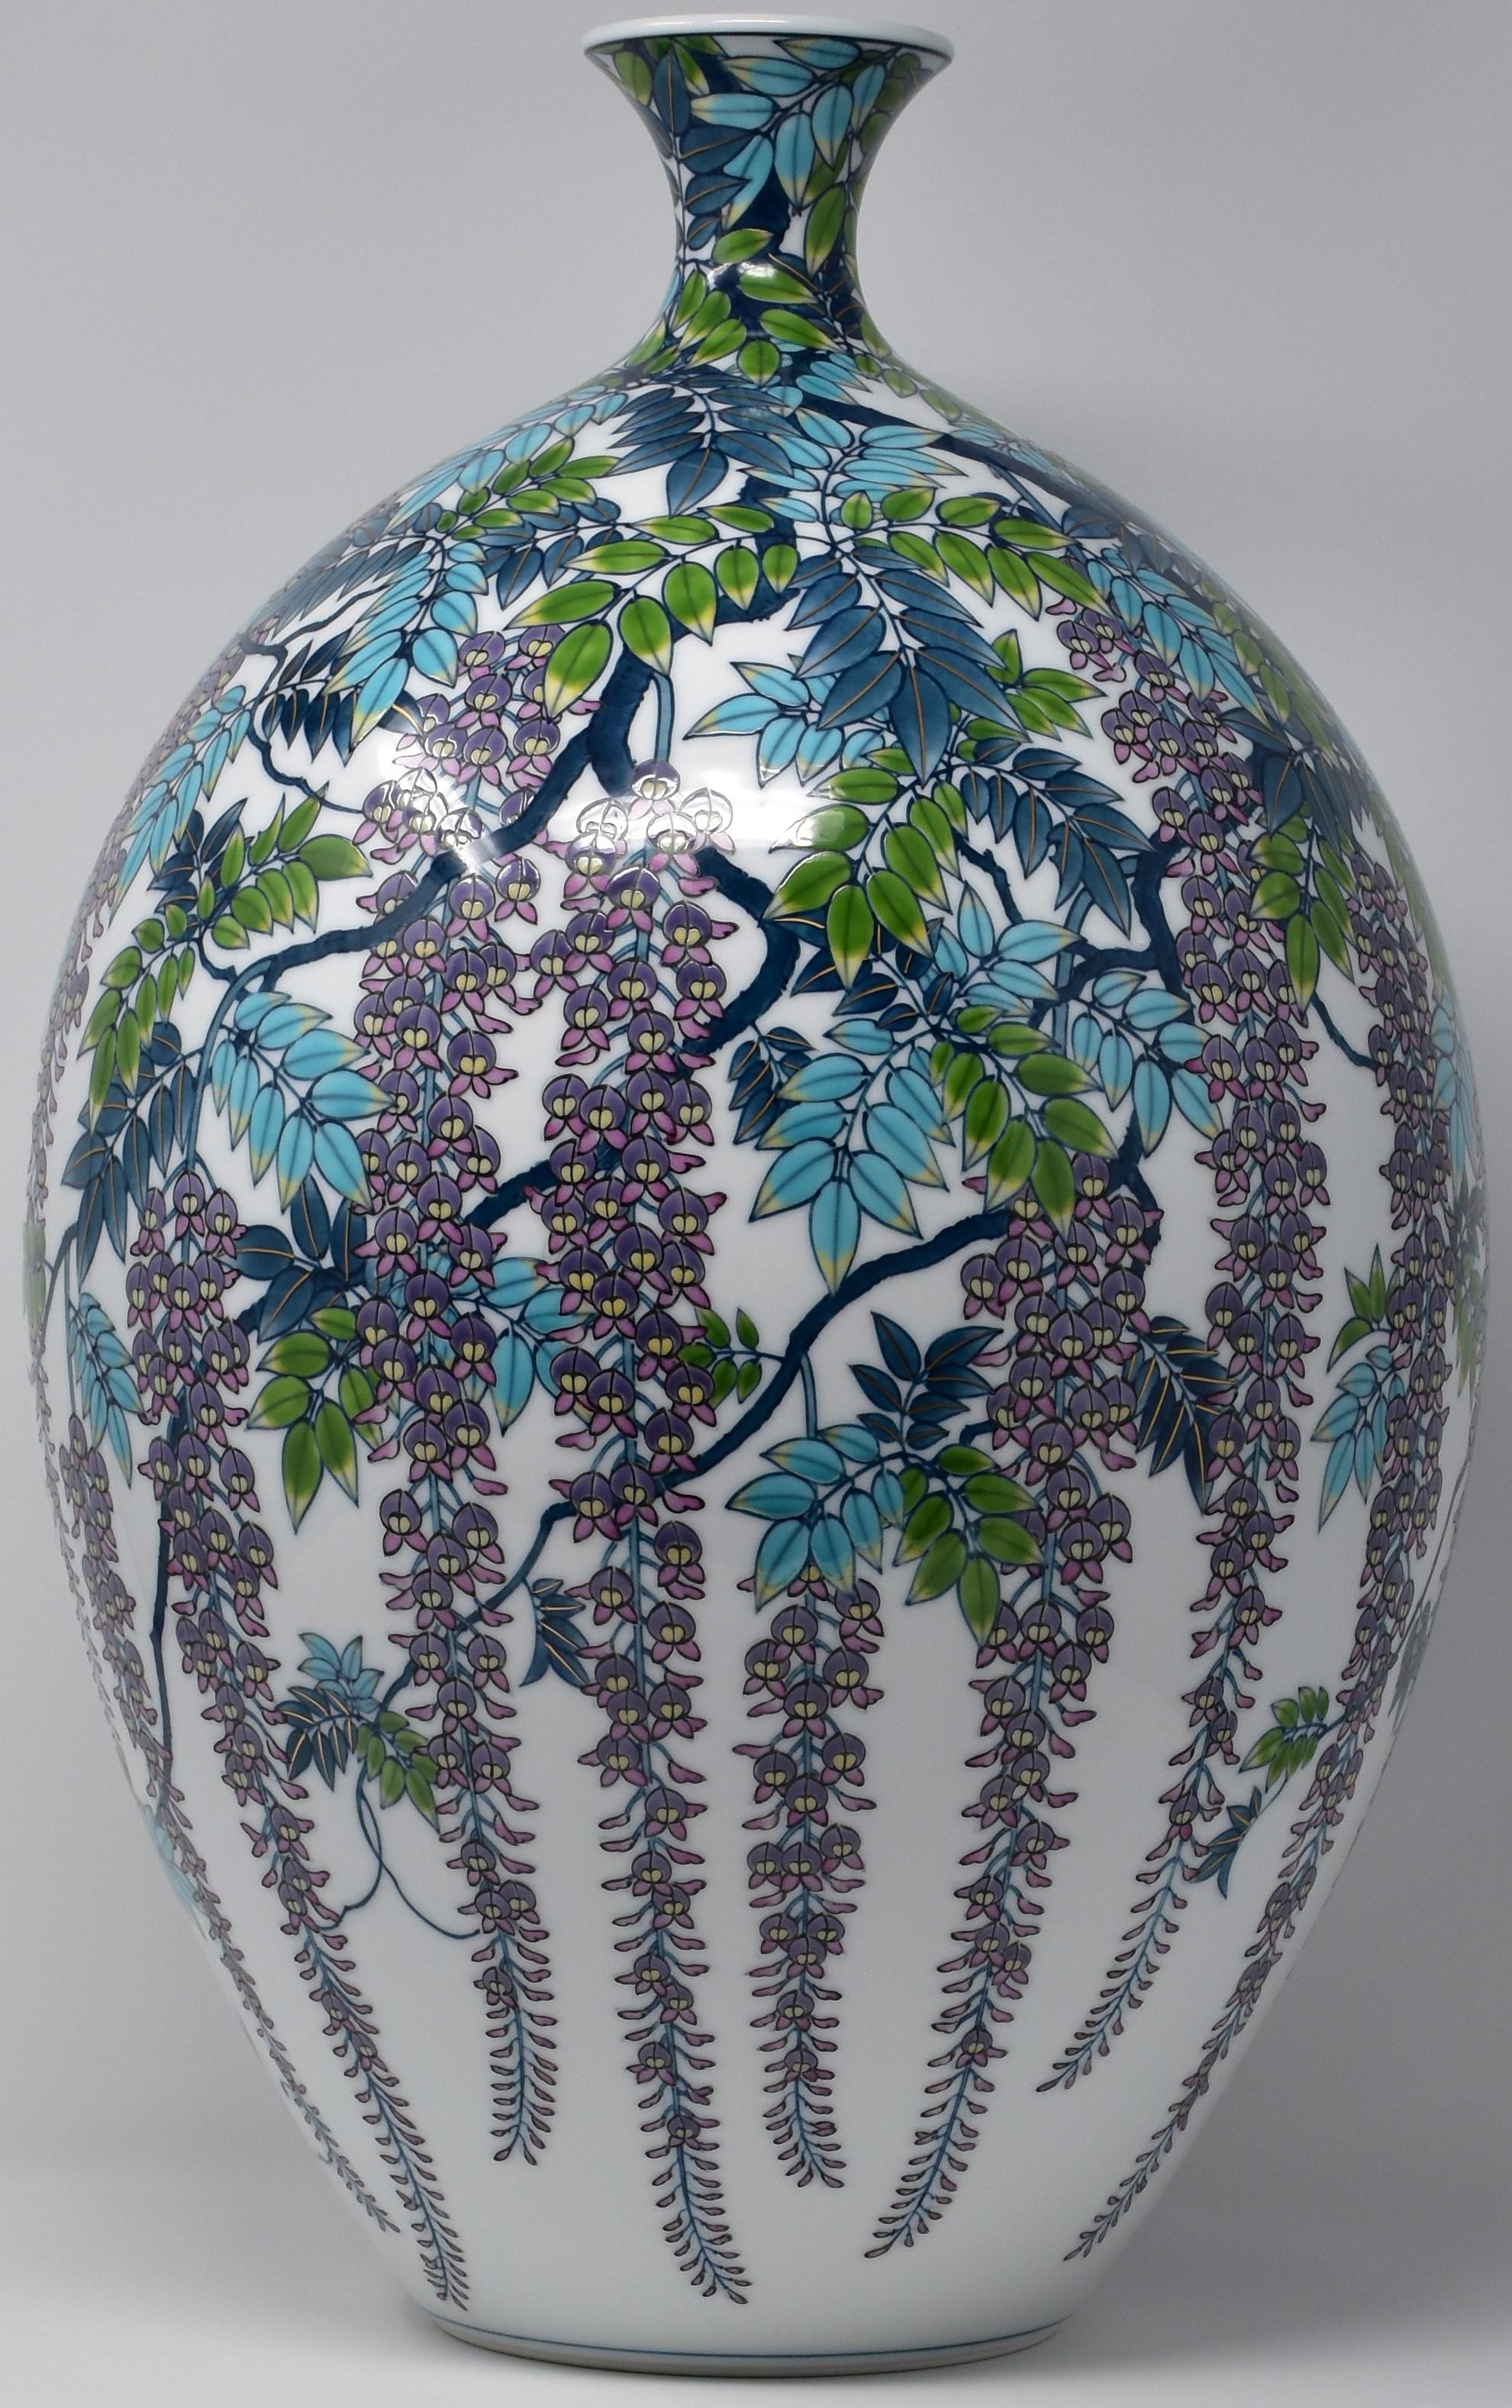  Contempory Imari Large Japanese Decorative Porcelain Vase by Master Artist 8